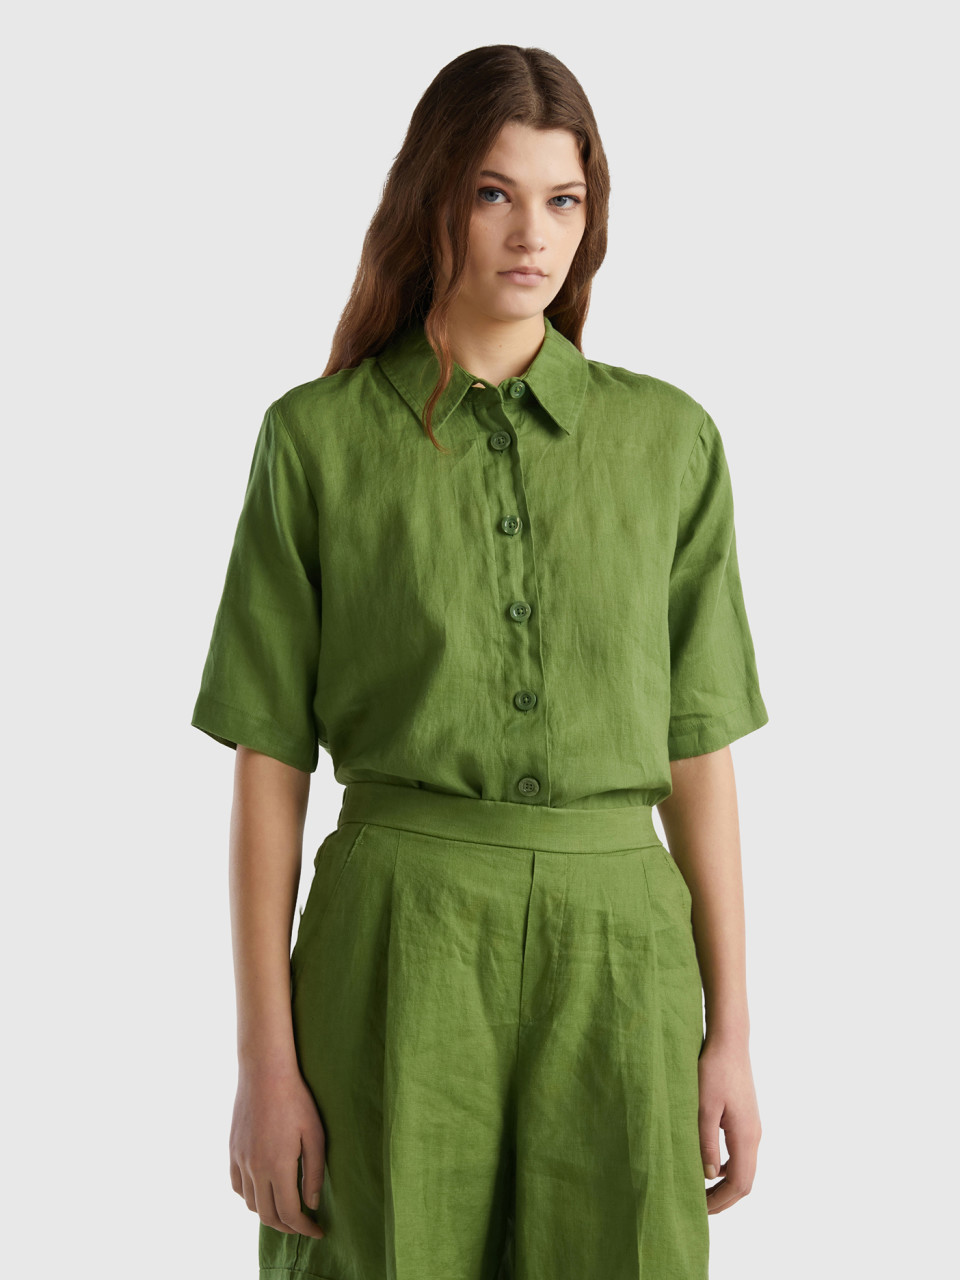 Benetton, Camicia Corta In Puro Lino, Verde Militare, Donna